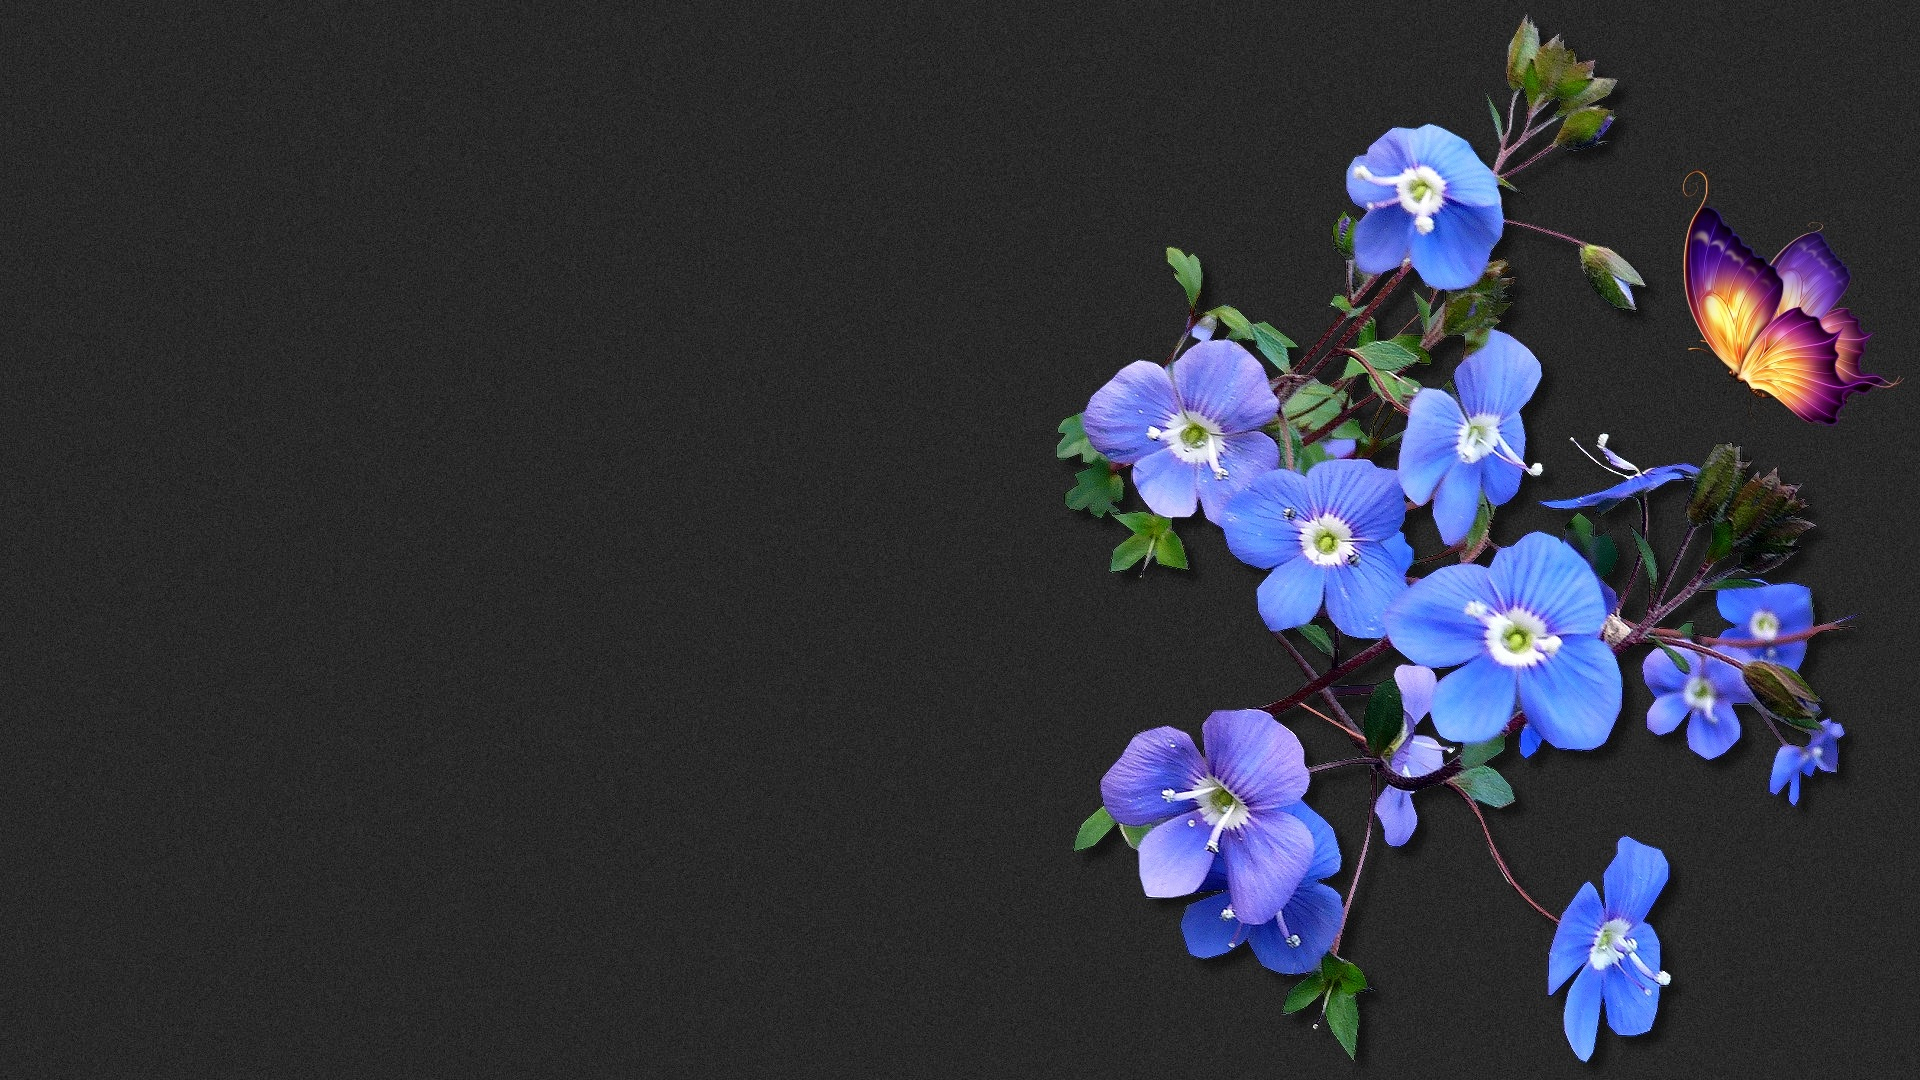 Blumen Hintergrundbilder Kostenlos Downloaden bestimmt für Bilder Blumen Kostenlos Downloaden